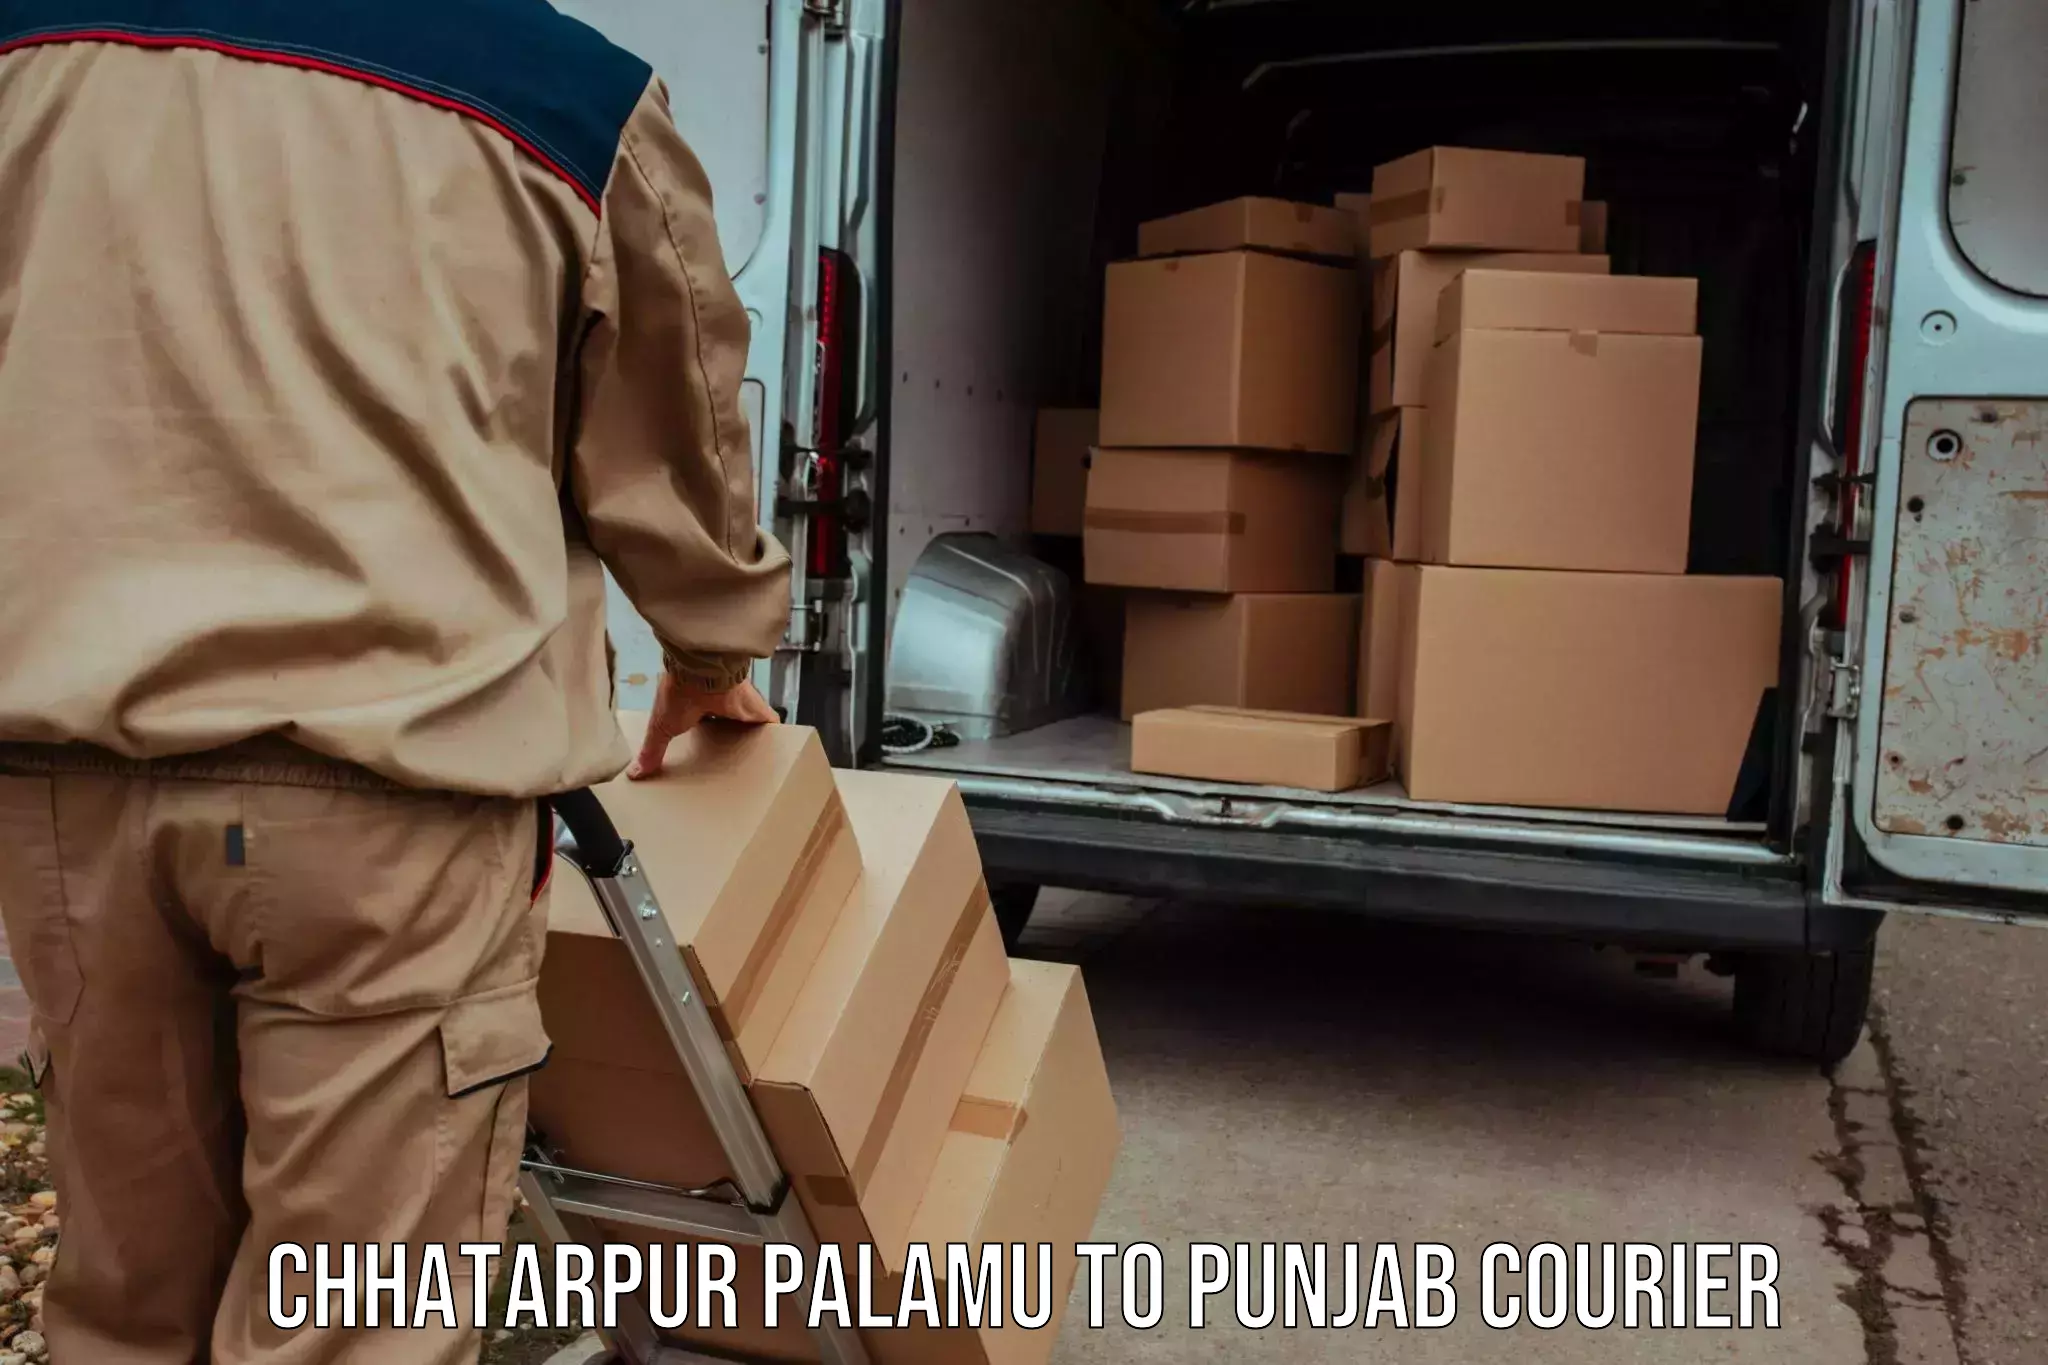 Express package handling Chhatarpur Palamu to Jalandhar